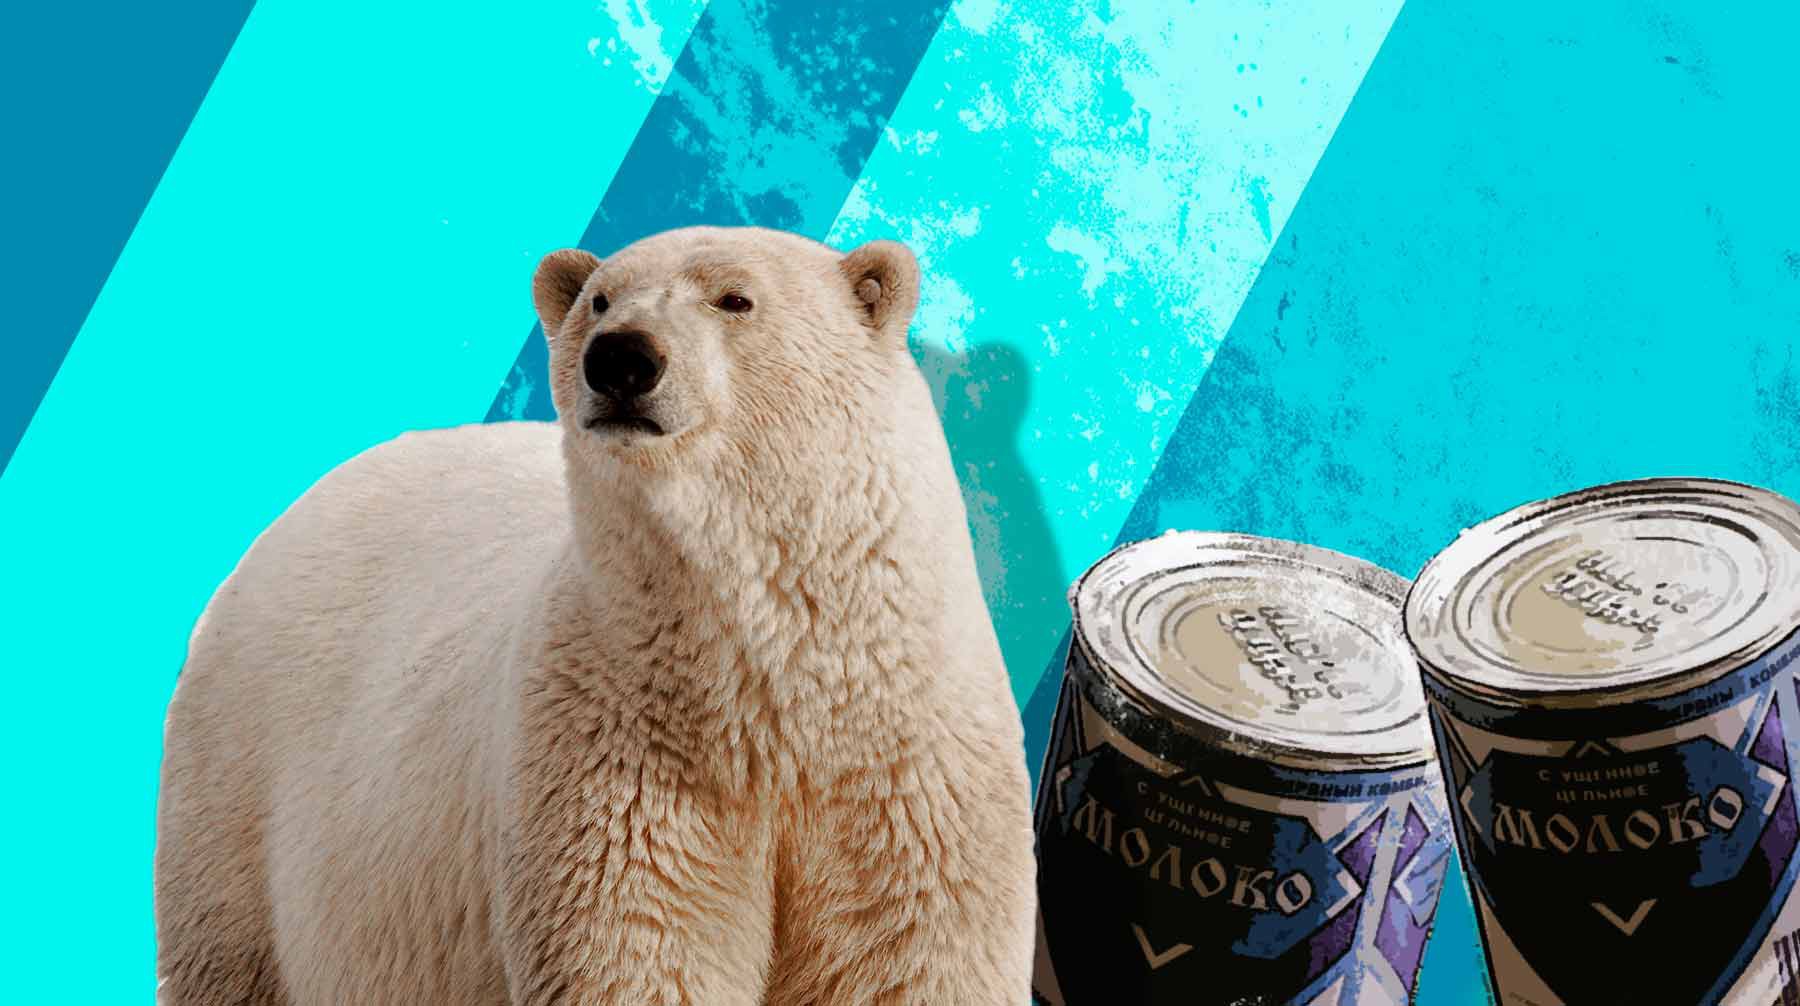 Dailystorm - «Не ест вторые сутки, а после спасения убежит на волю»: зоозащитники рассказали о медведе с банкой сгущенки в пасти